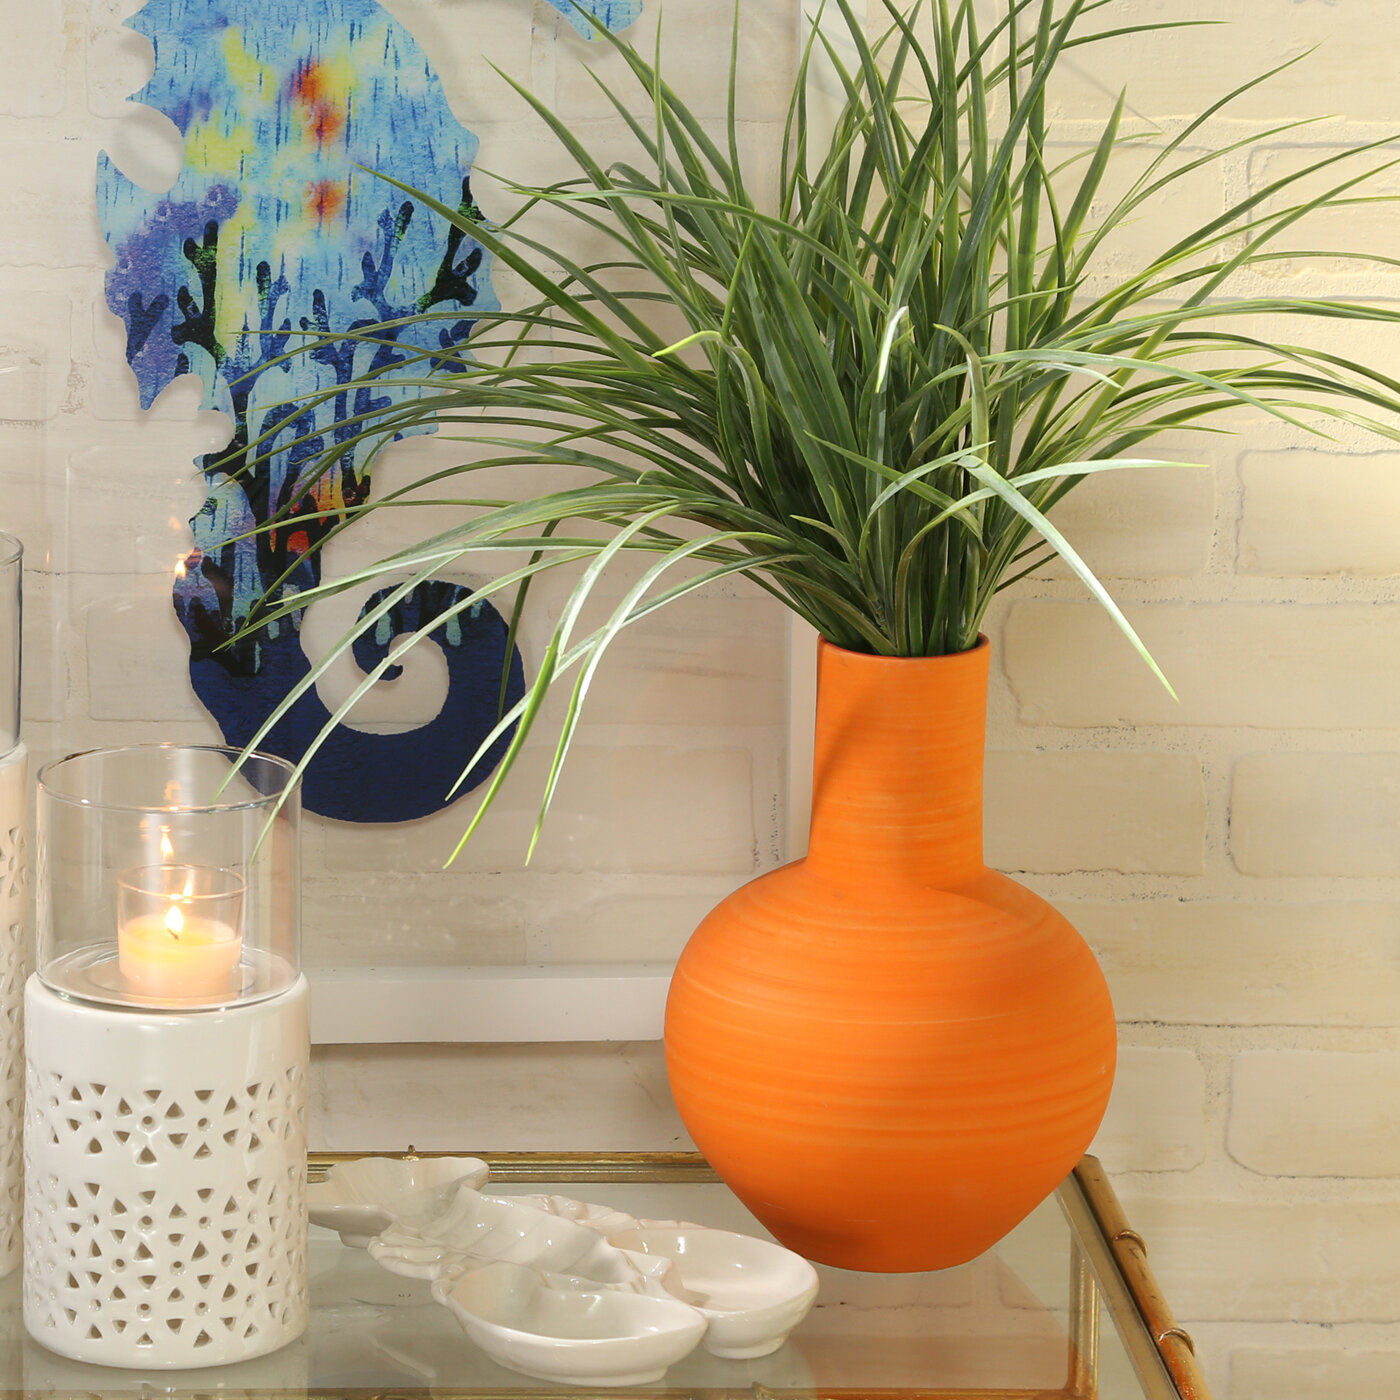 Ceramic Flower Vase Living Room Decor Home Decoration Office Plant Bedroom Desk